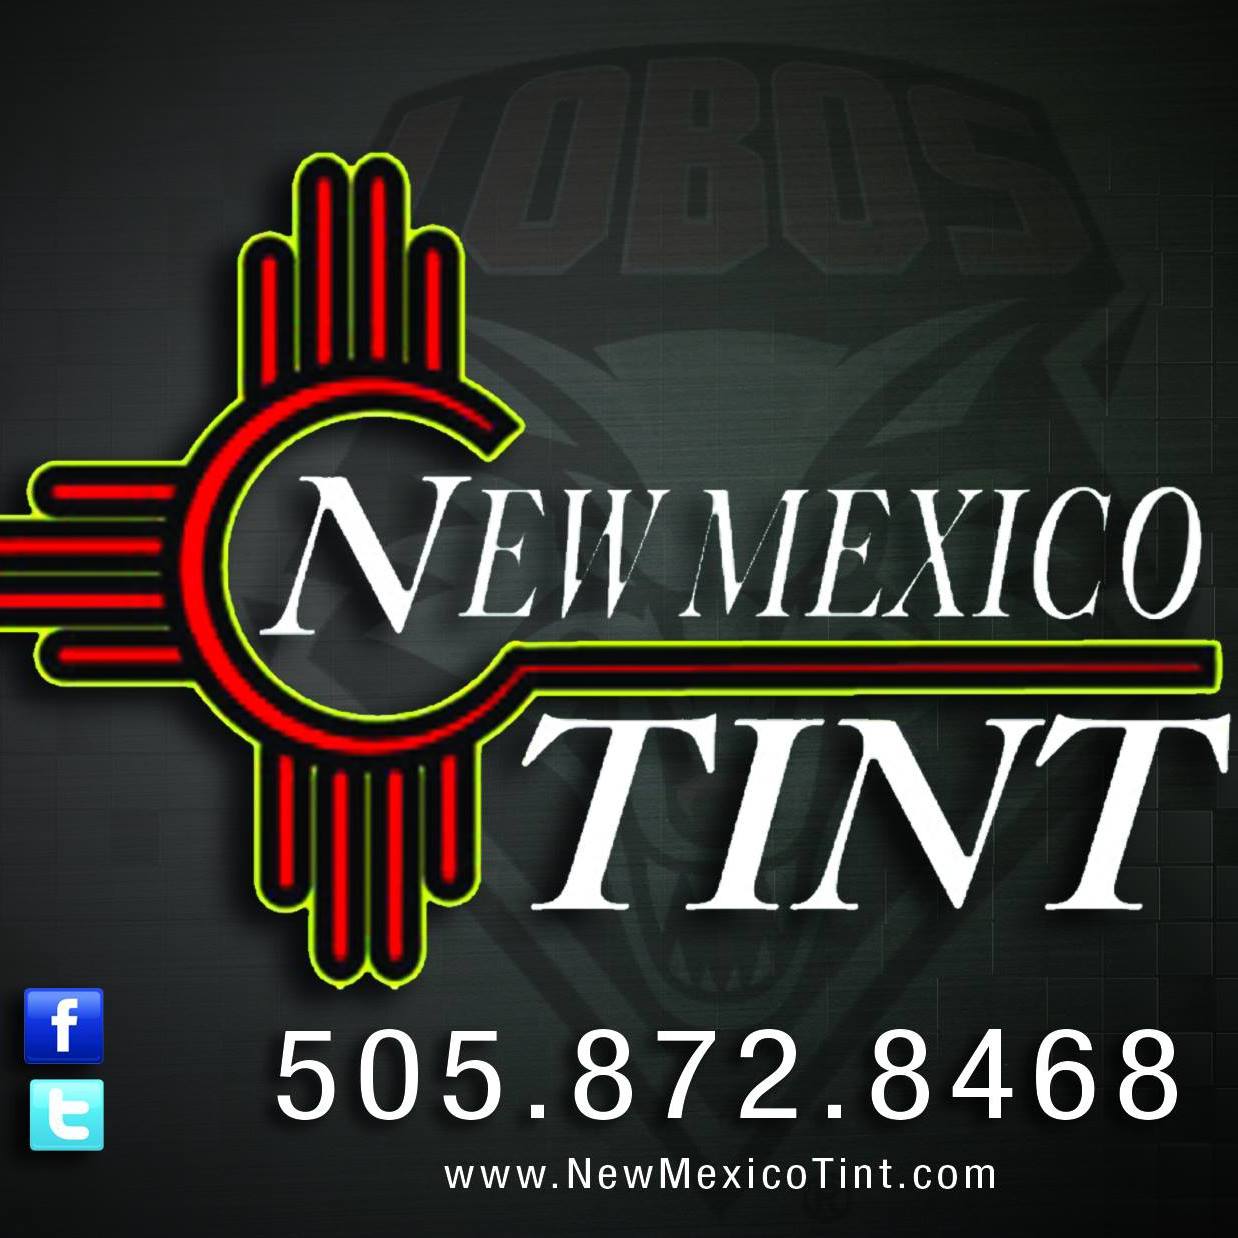 Company logo of New Mexico Tint